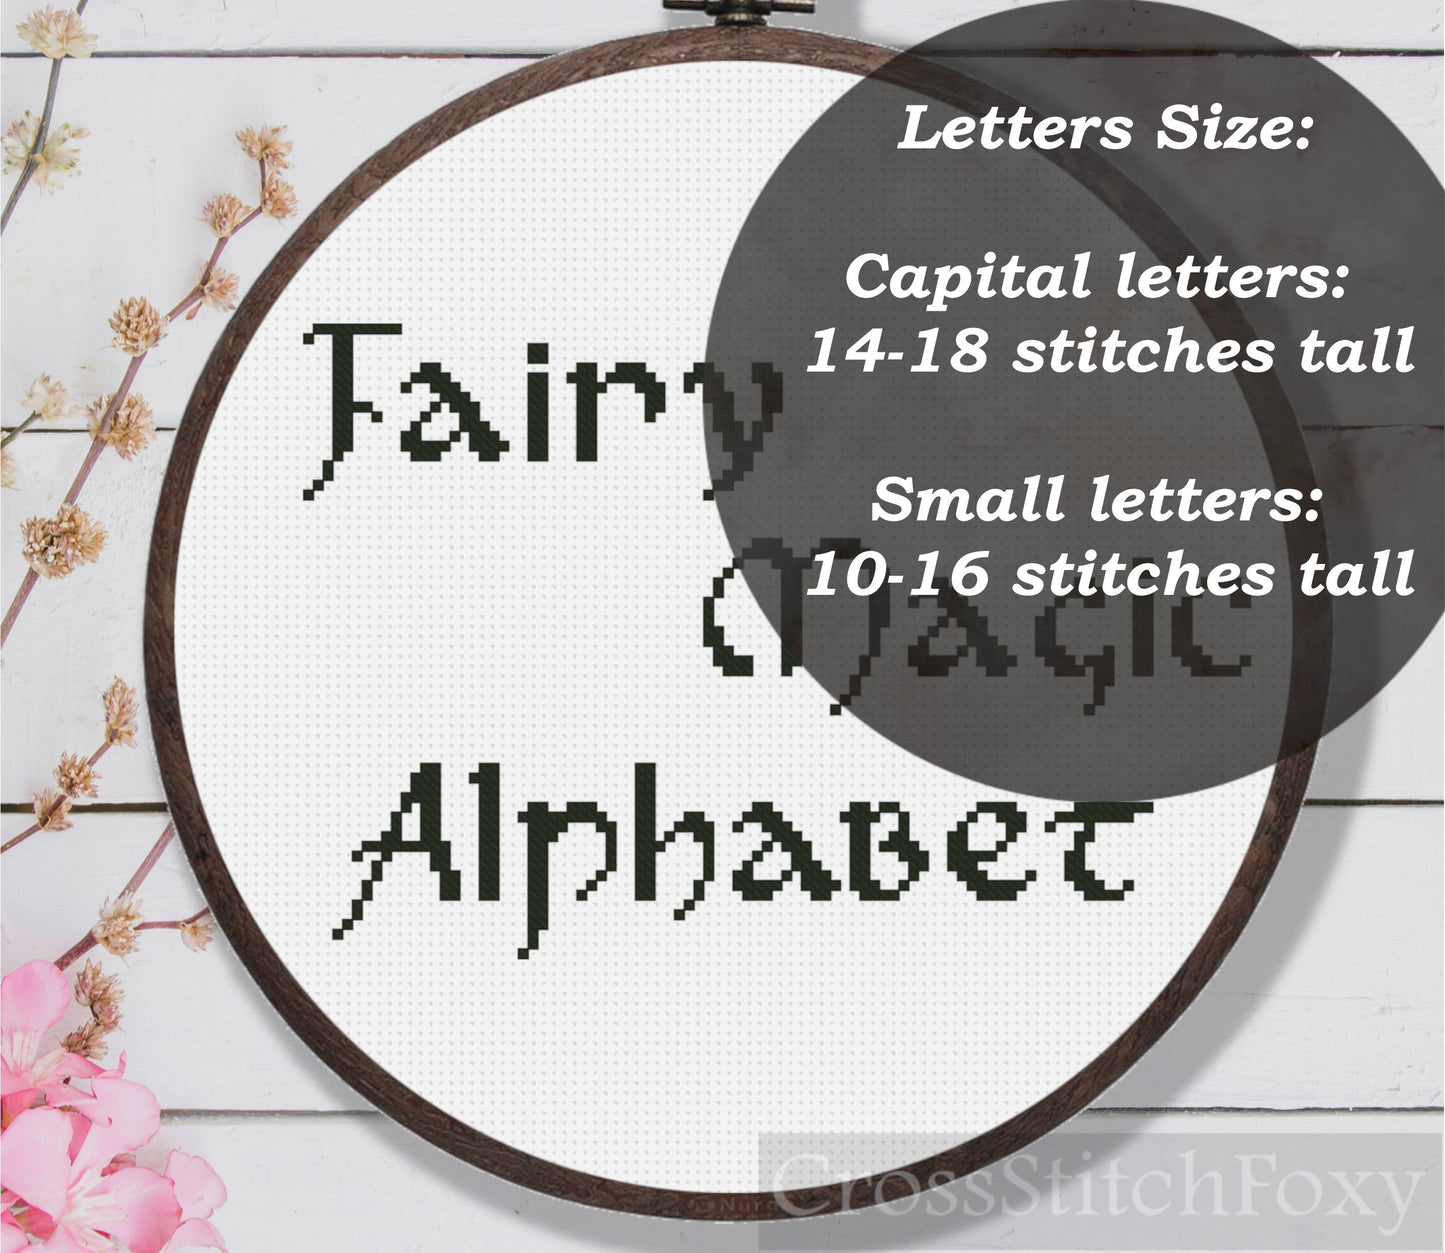 Fairy Magic Alphabet Cross Stitch Pattern